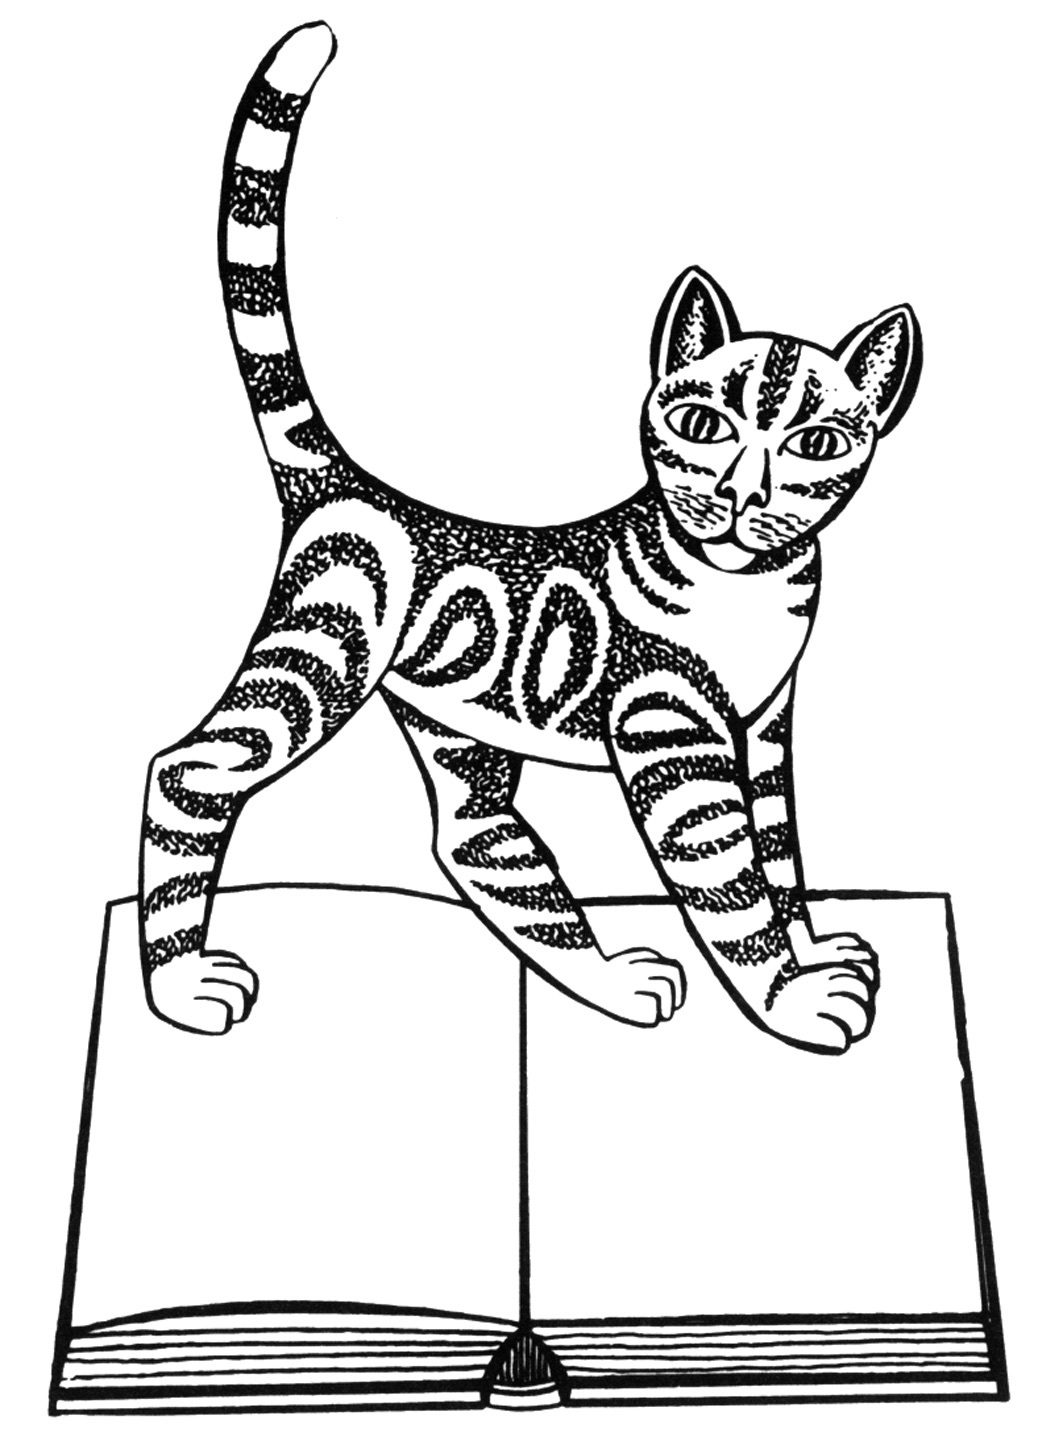 Cat, Cartoon, Carnivore, Felidae, Organism, Art, Font, Line